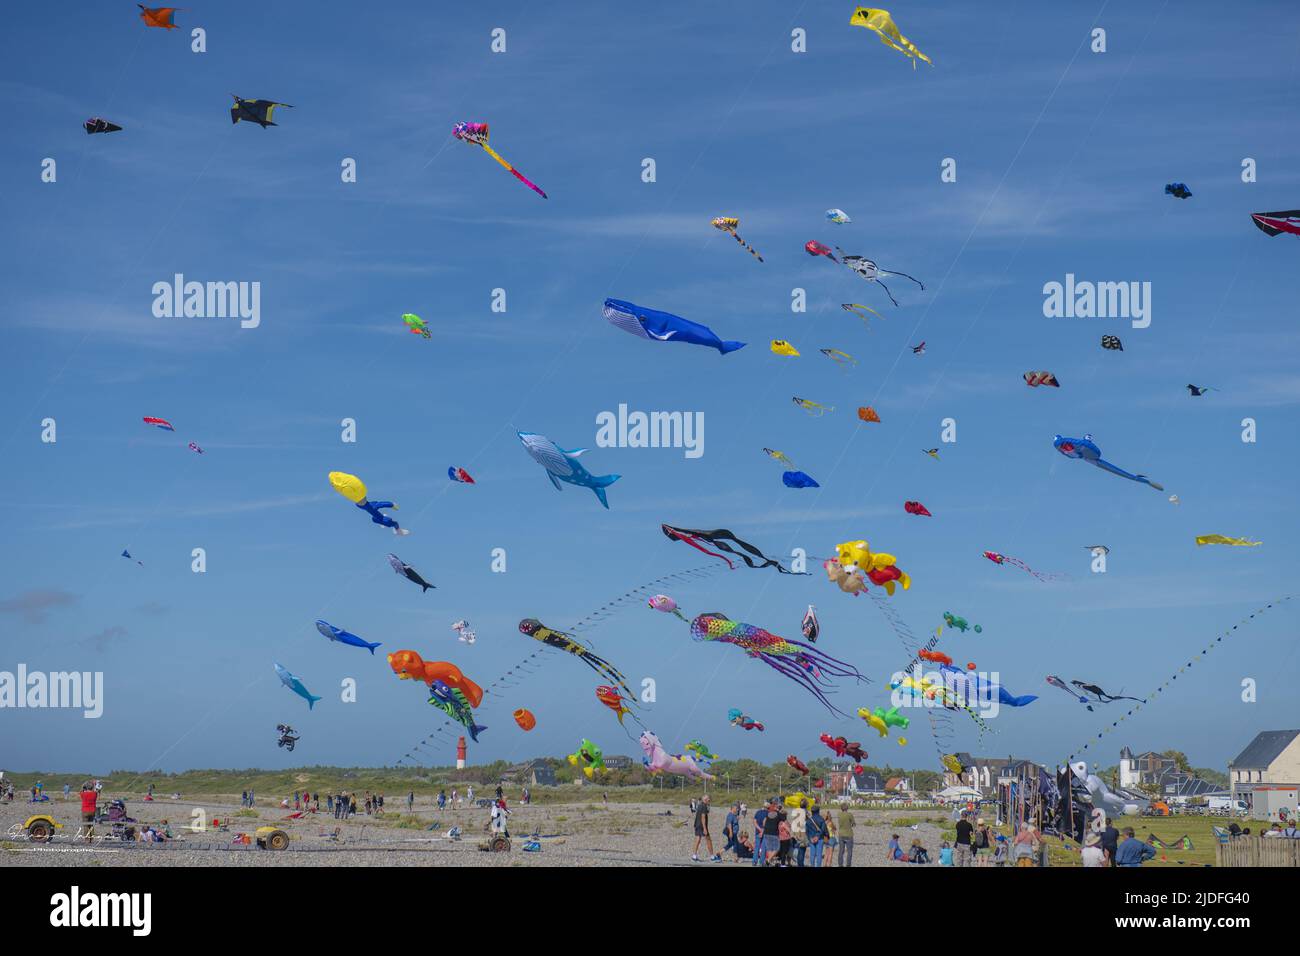 Cerf volants et Festival à Cayeux sur mer, les cabines au Bord de l'Eau Stockfoto